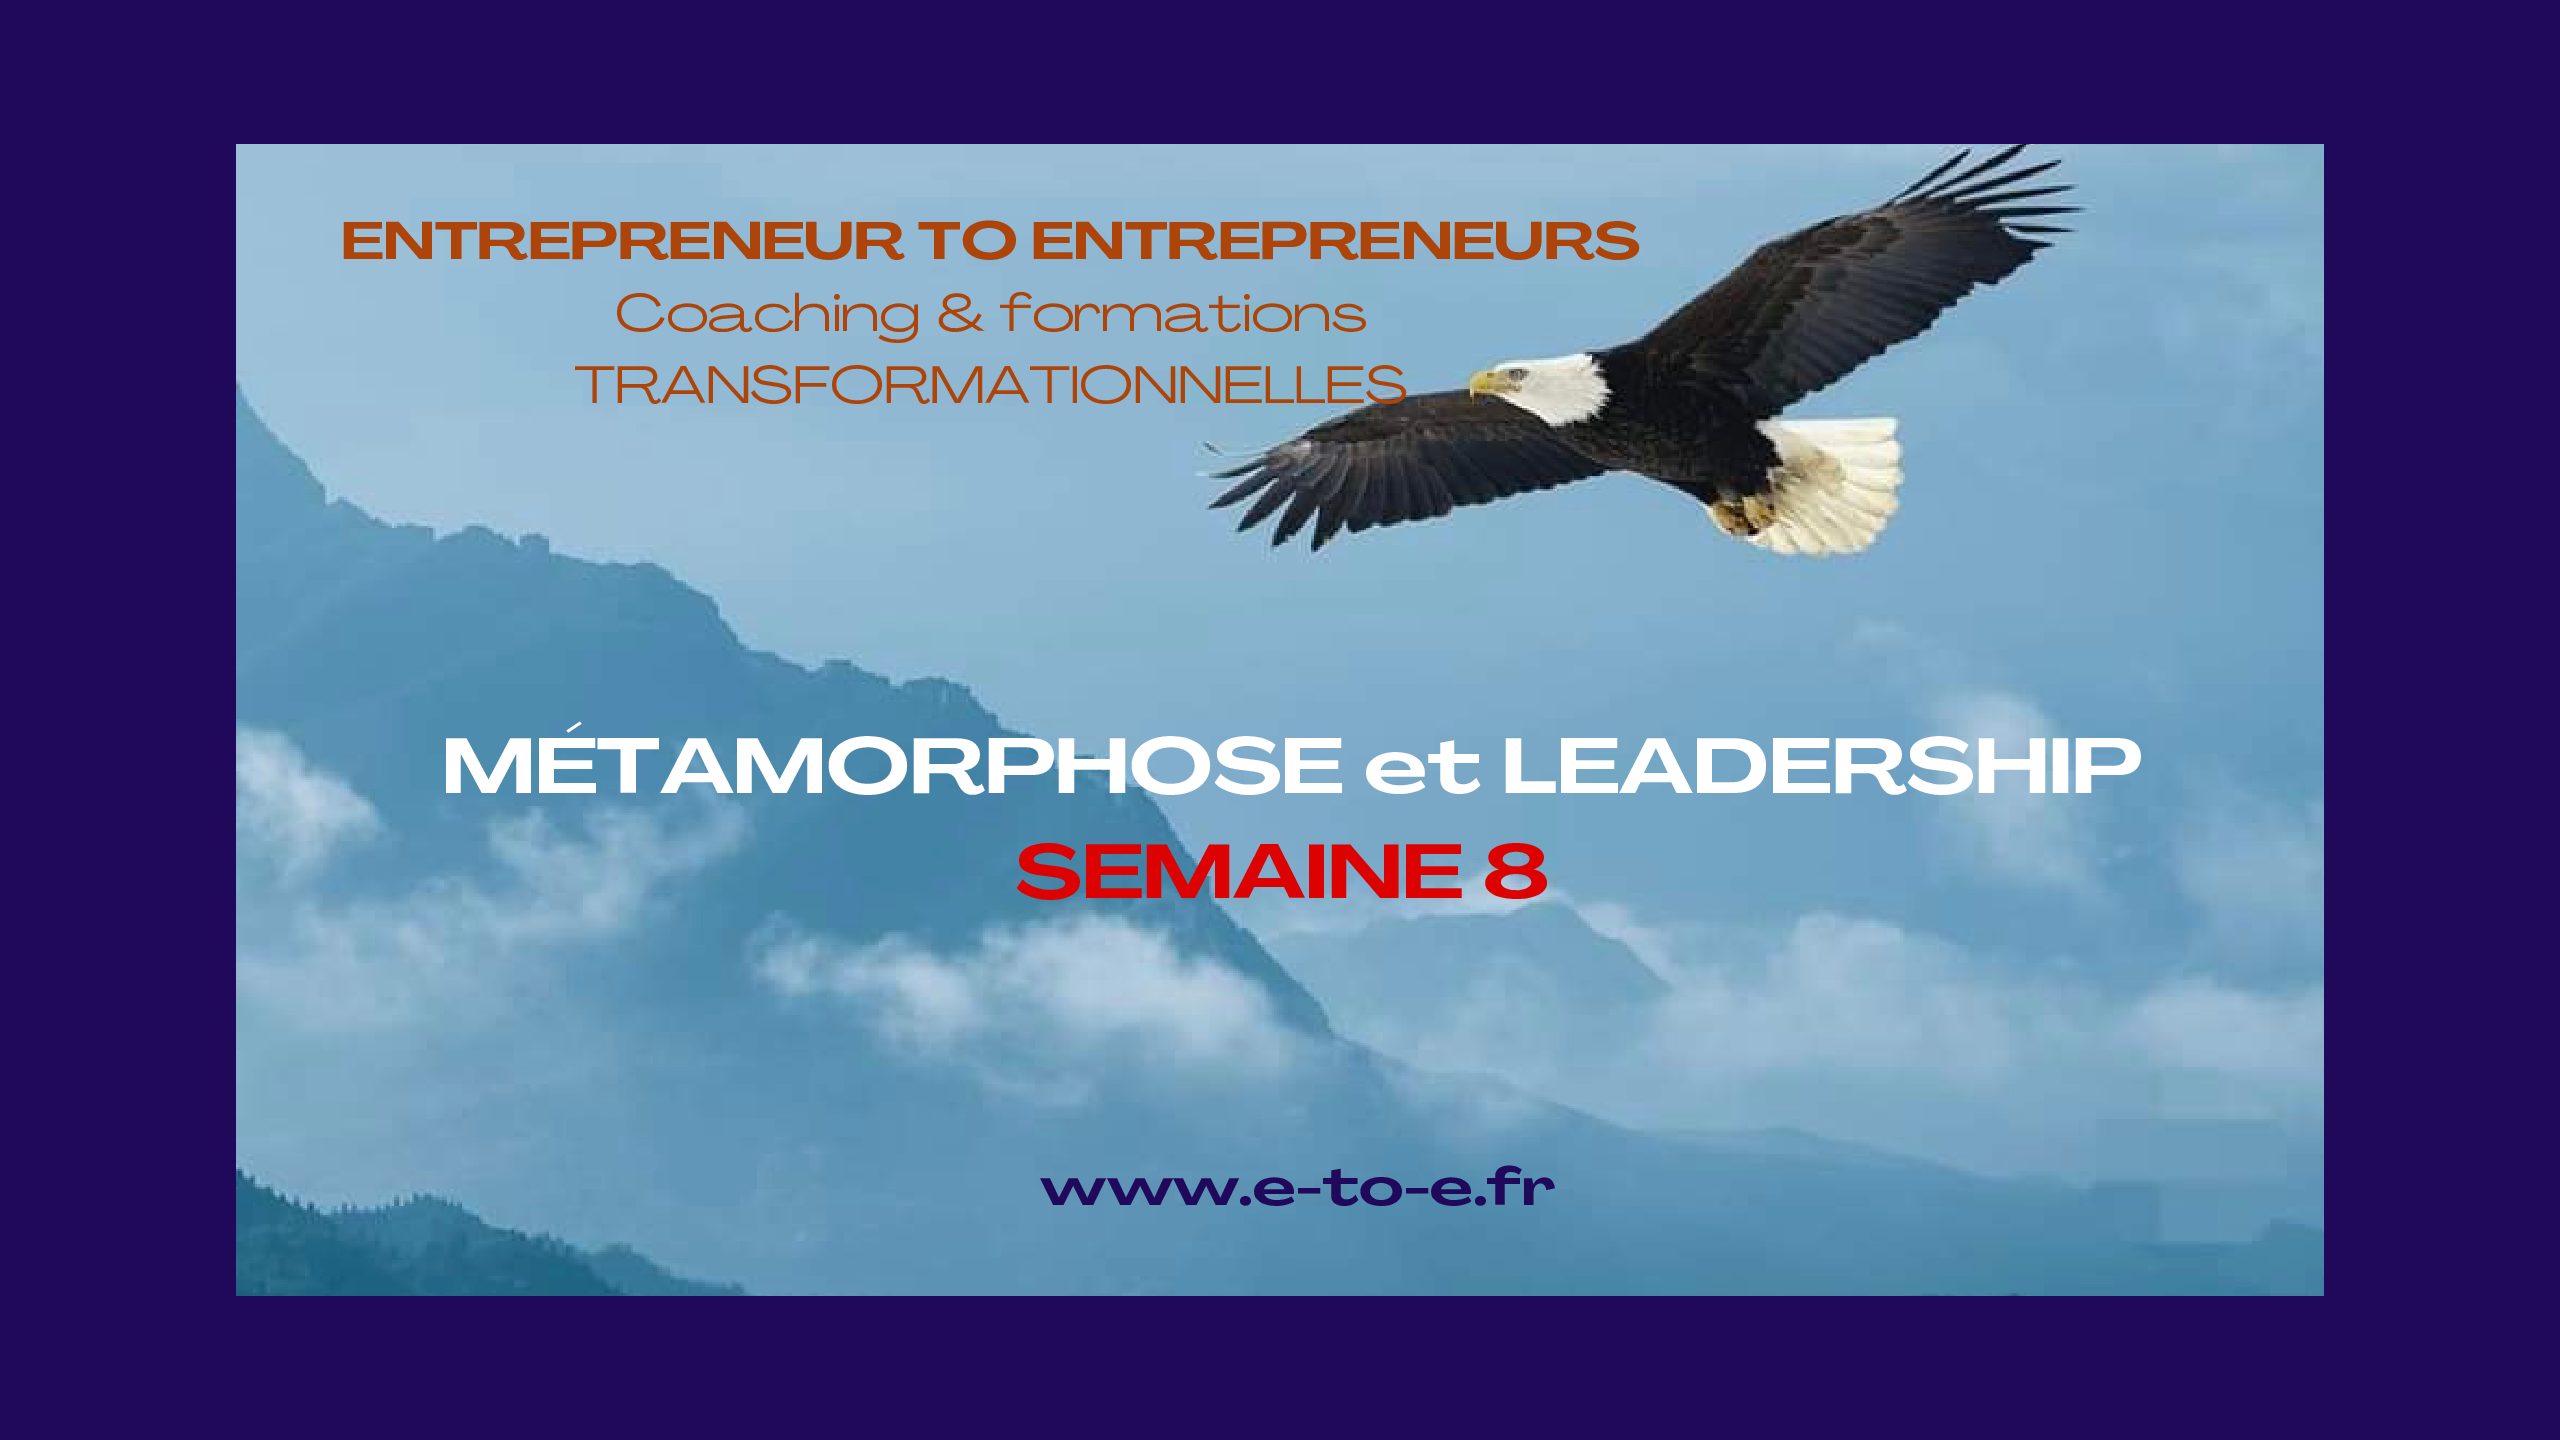 MÉTAMORPHOSE & LEADERSHIP SEMAINE 8